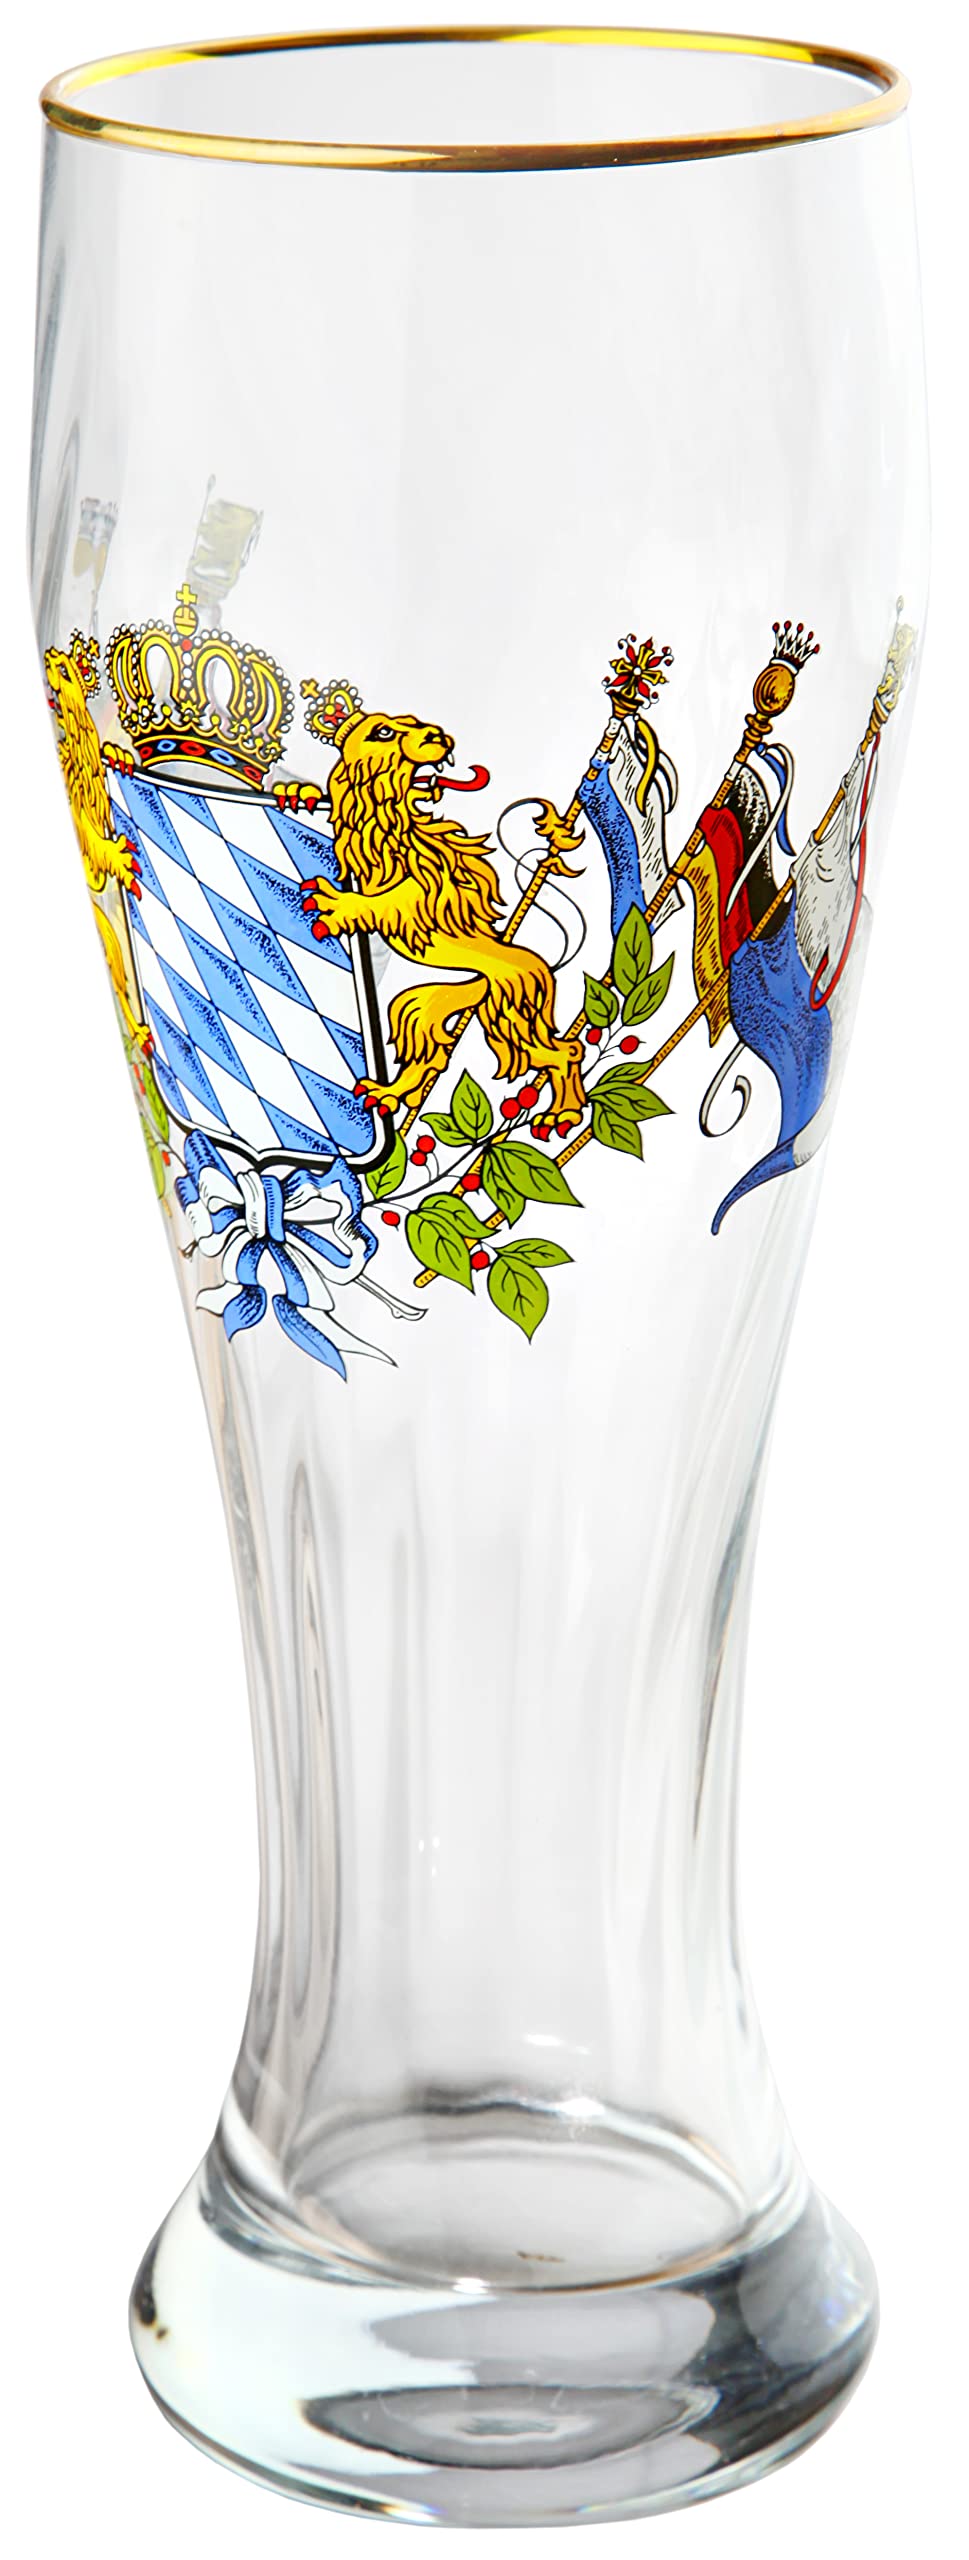 Sannys Das bayerische Weißbierglas mit Bayernwappen und Goldrand - klar - Weizenbierglas (2 Stück)